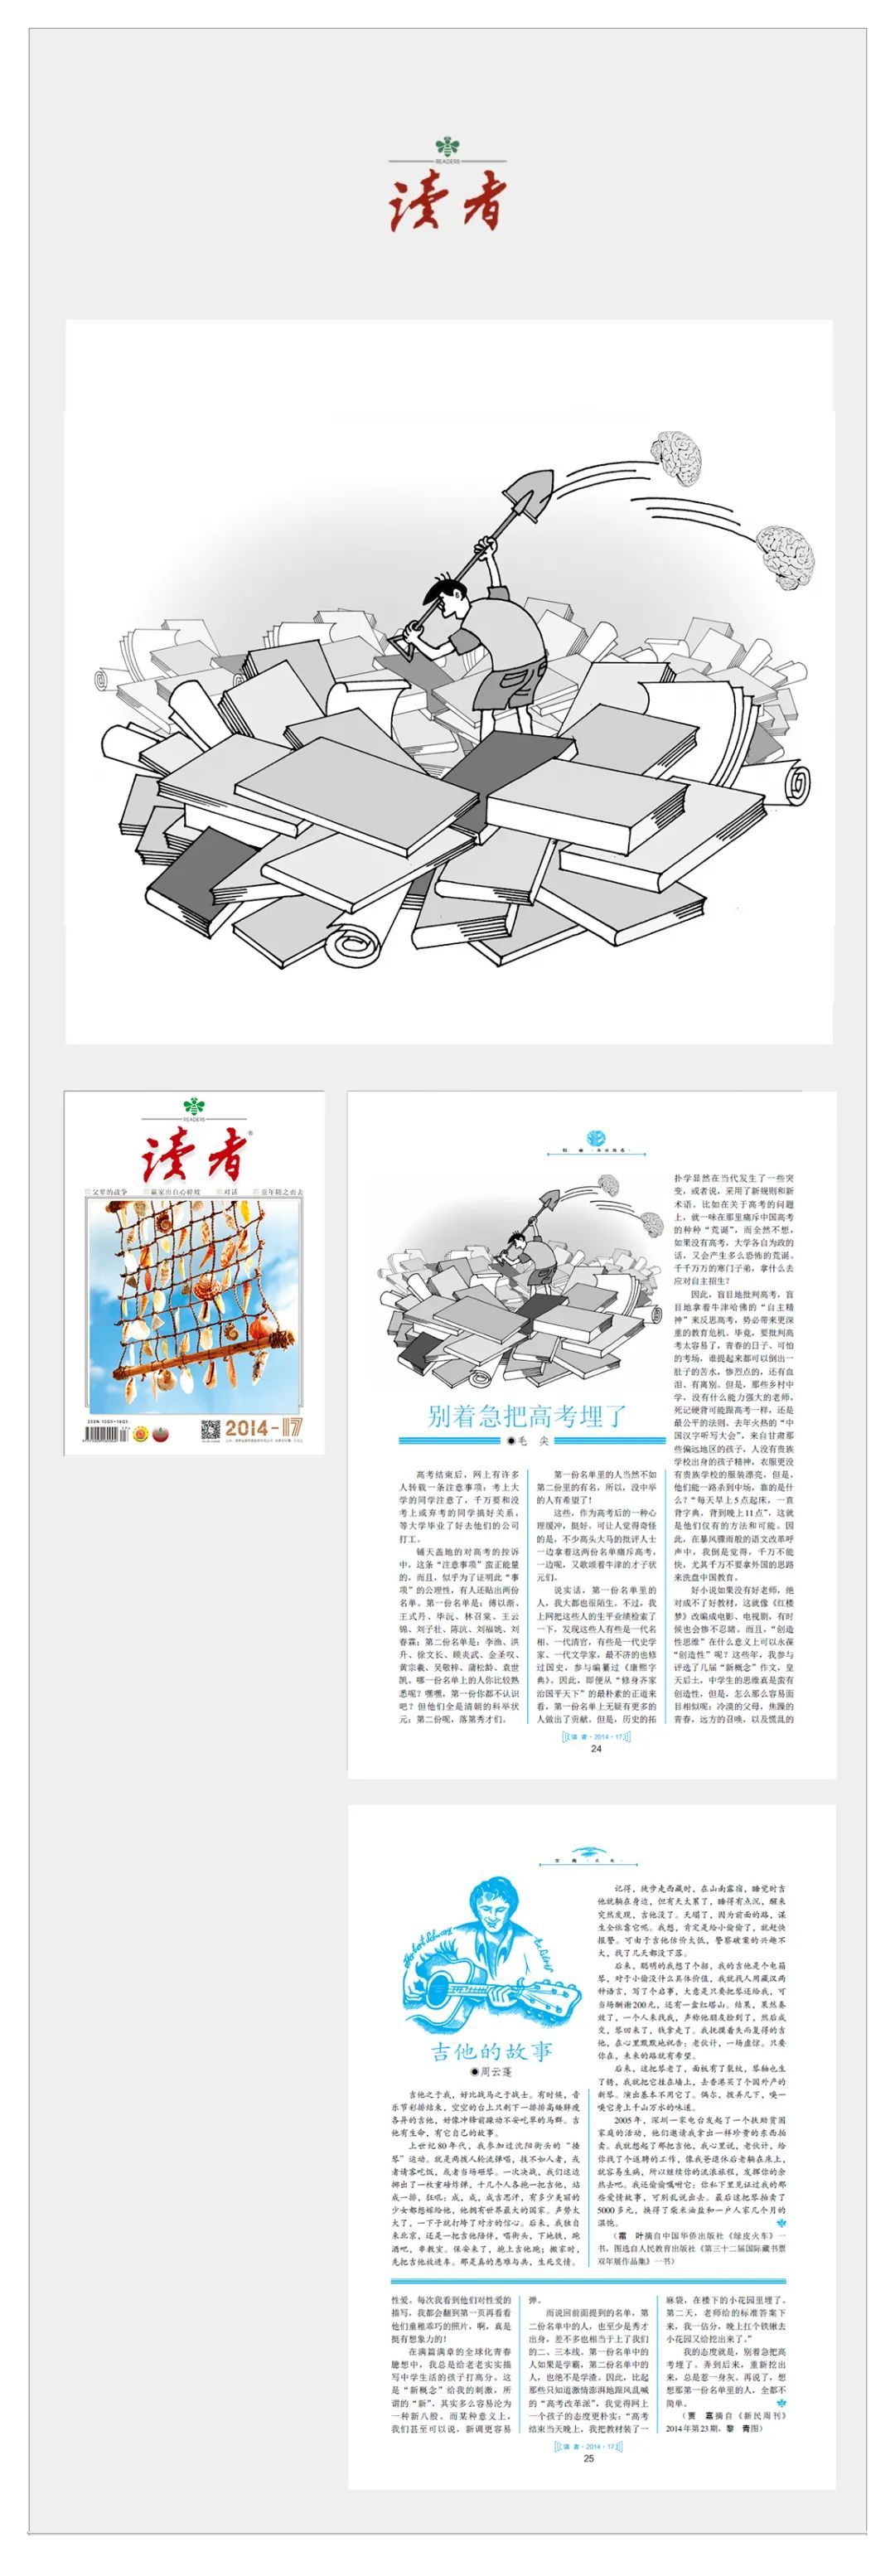 “40年，我们一起走过 ——《读者》插图大型线上文献展”开启，著名漫画家黎青参展